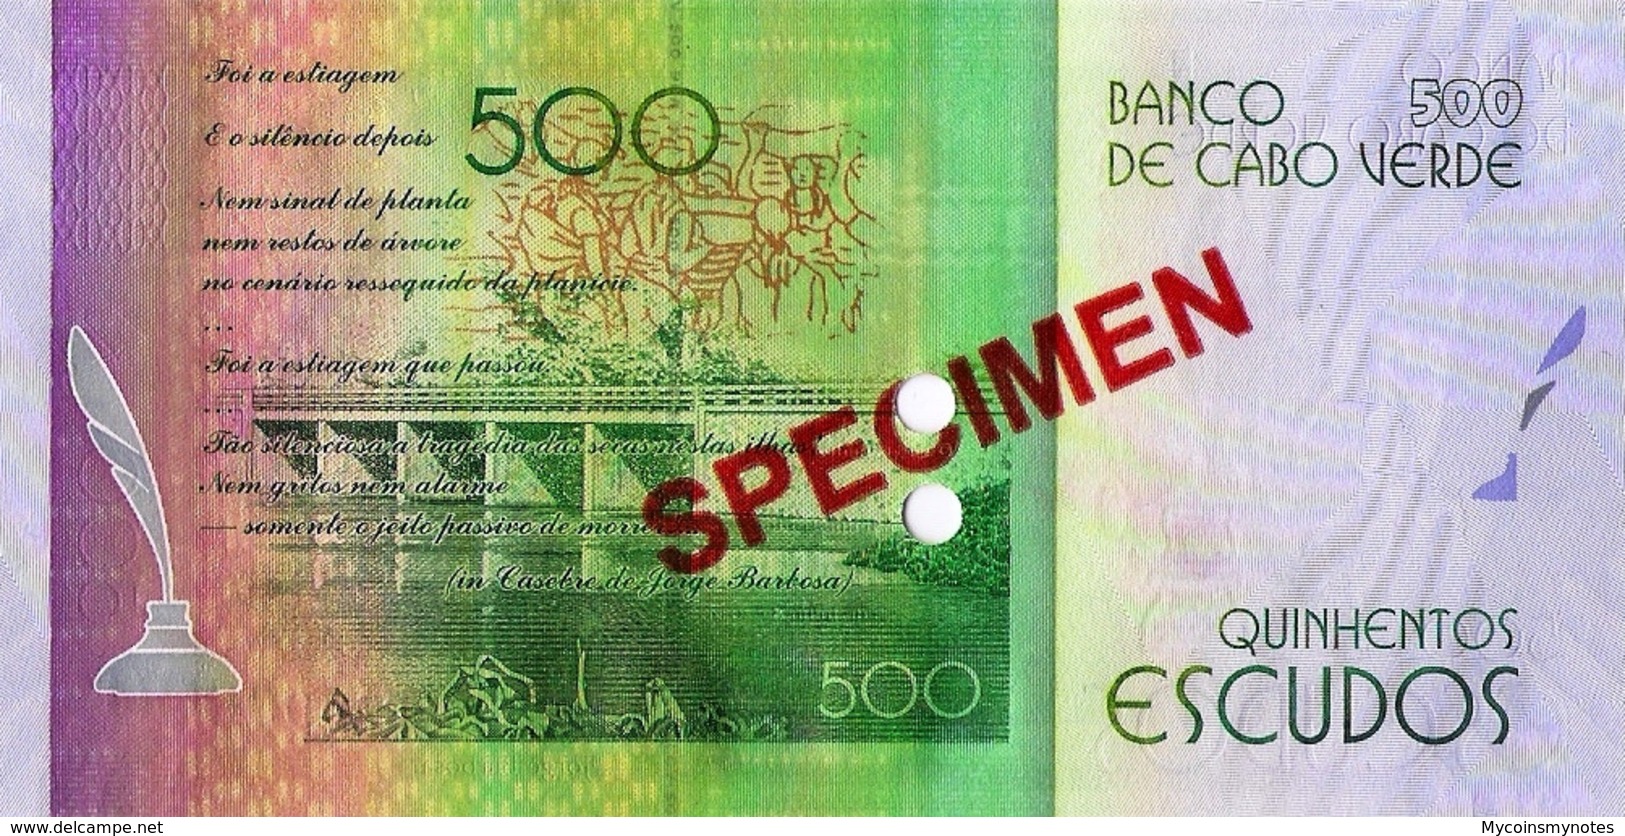 CAPE VERDE 500 "SPECIMEN" ESCUDOS FROM 2014, P72s, UNC - Specimen